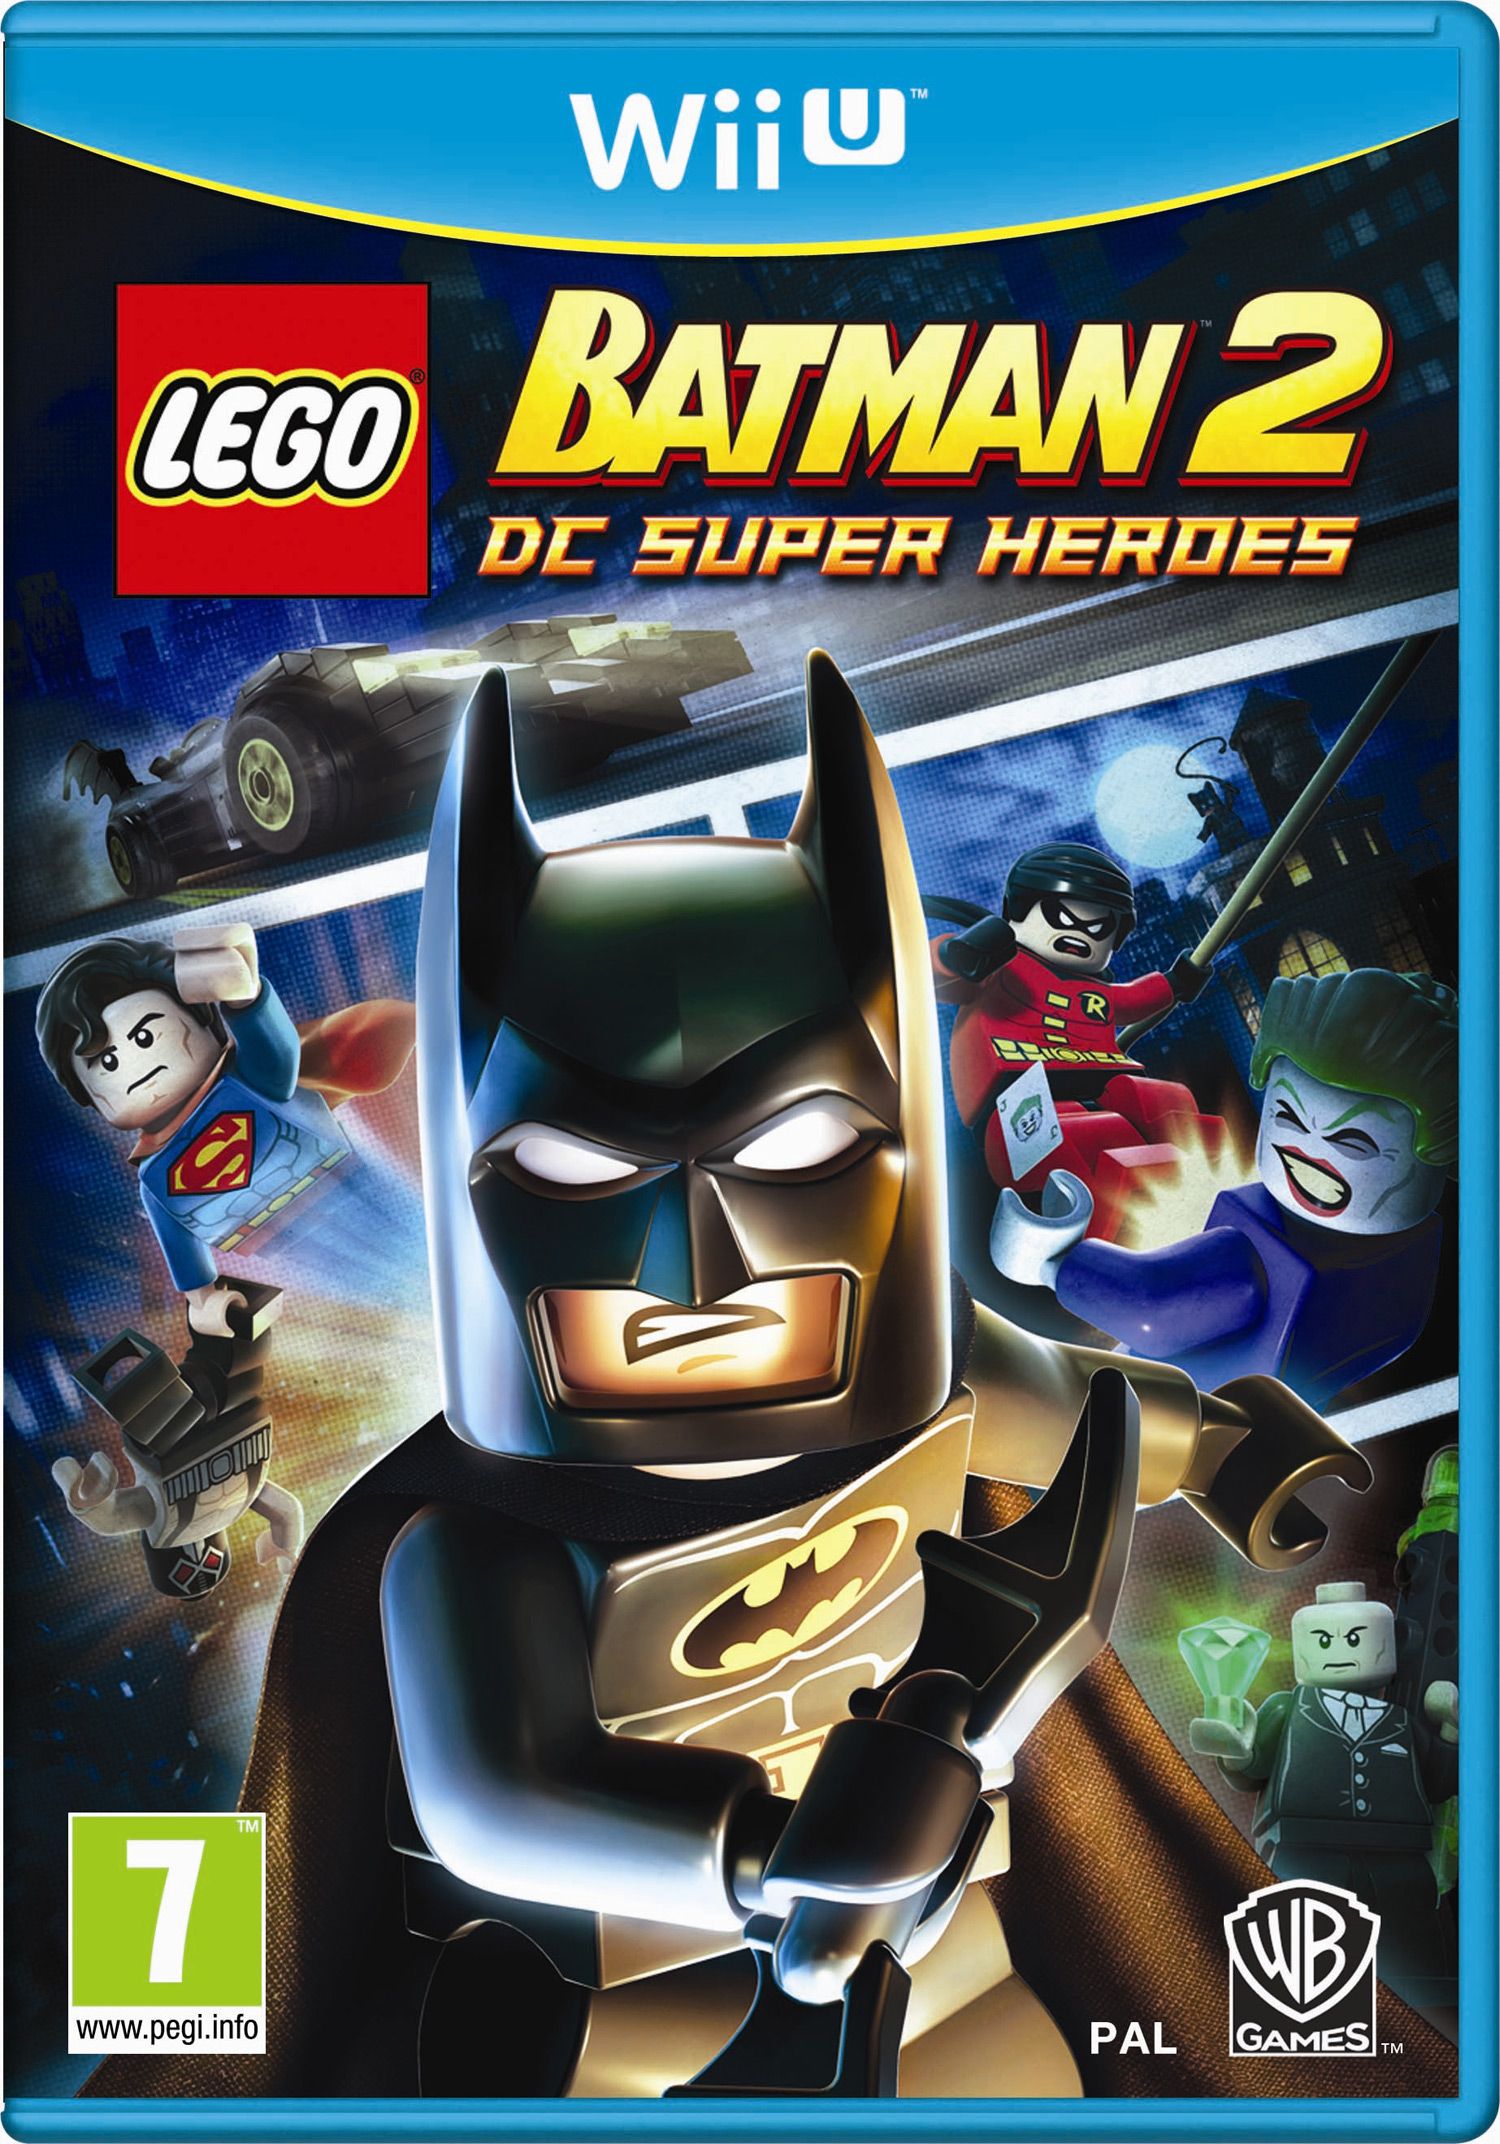 Lego Batman 2 Announced For Wii U